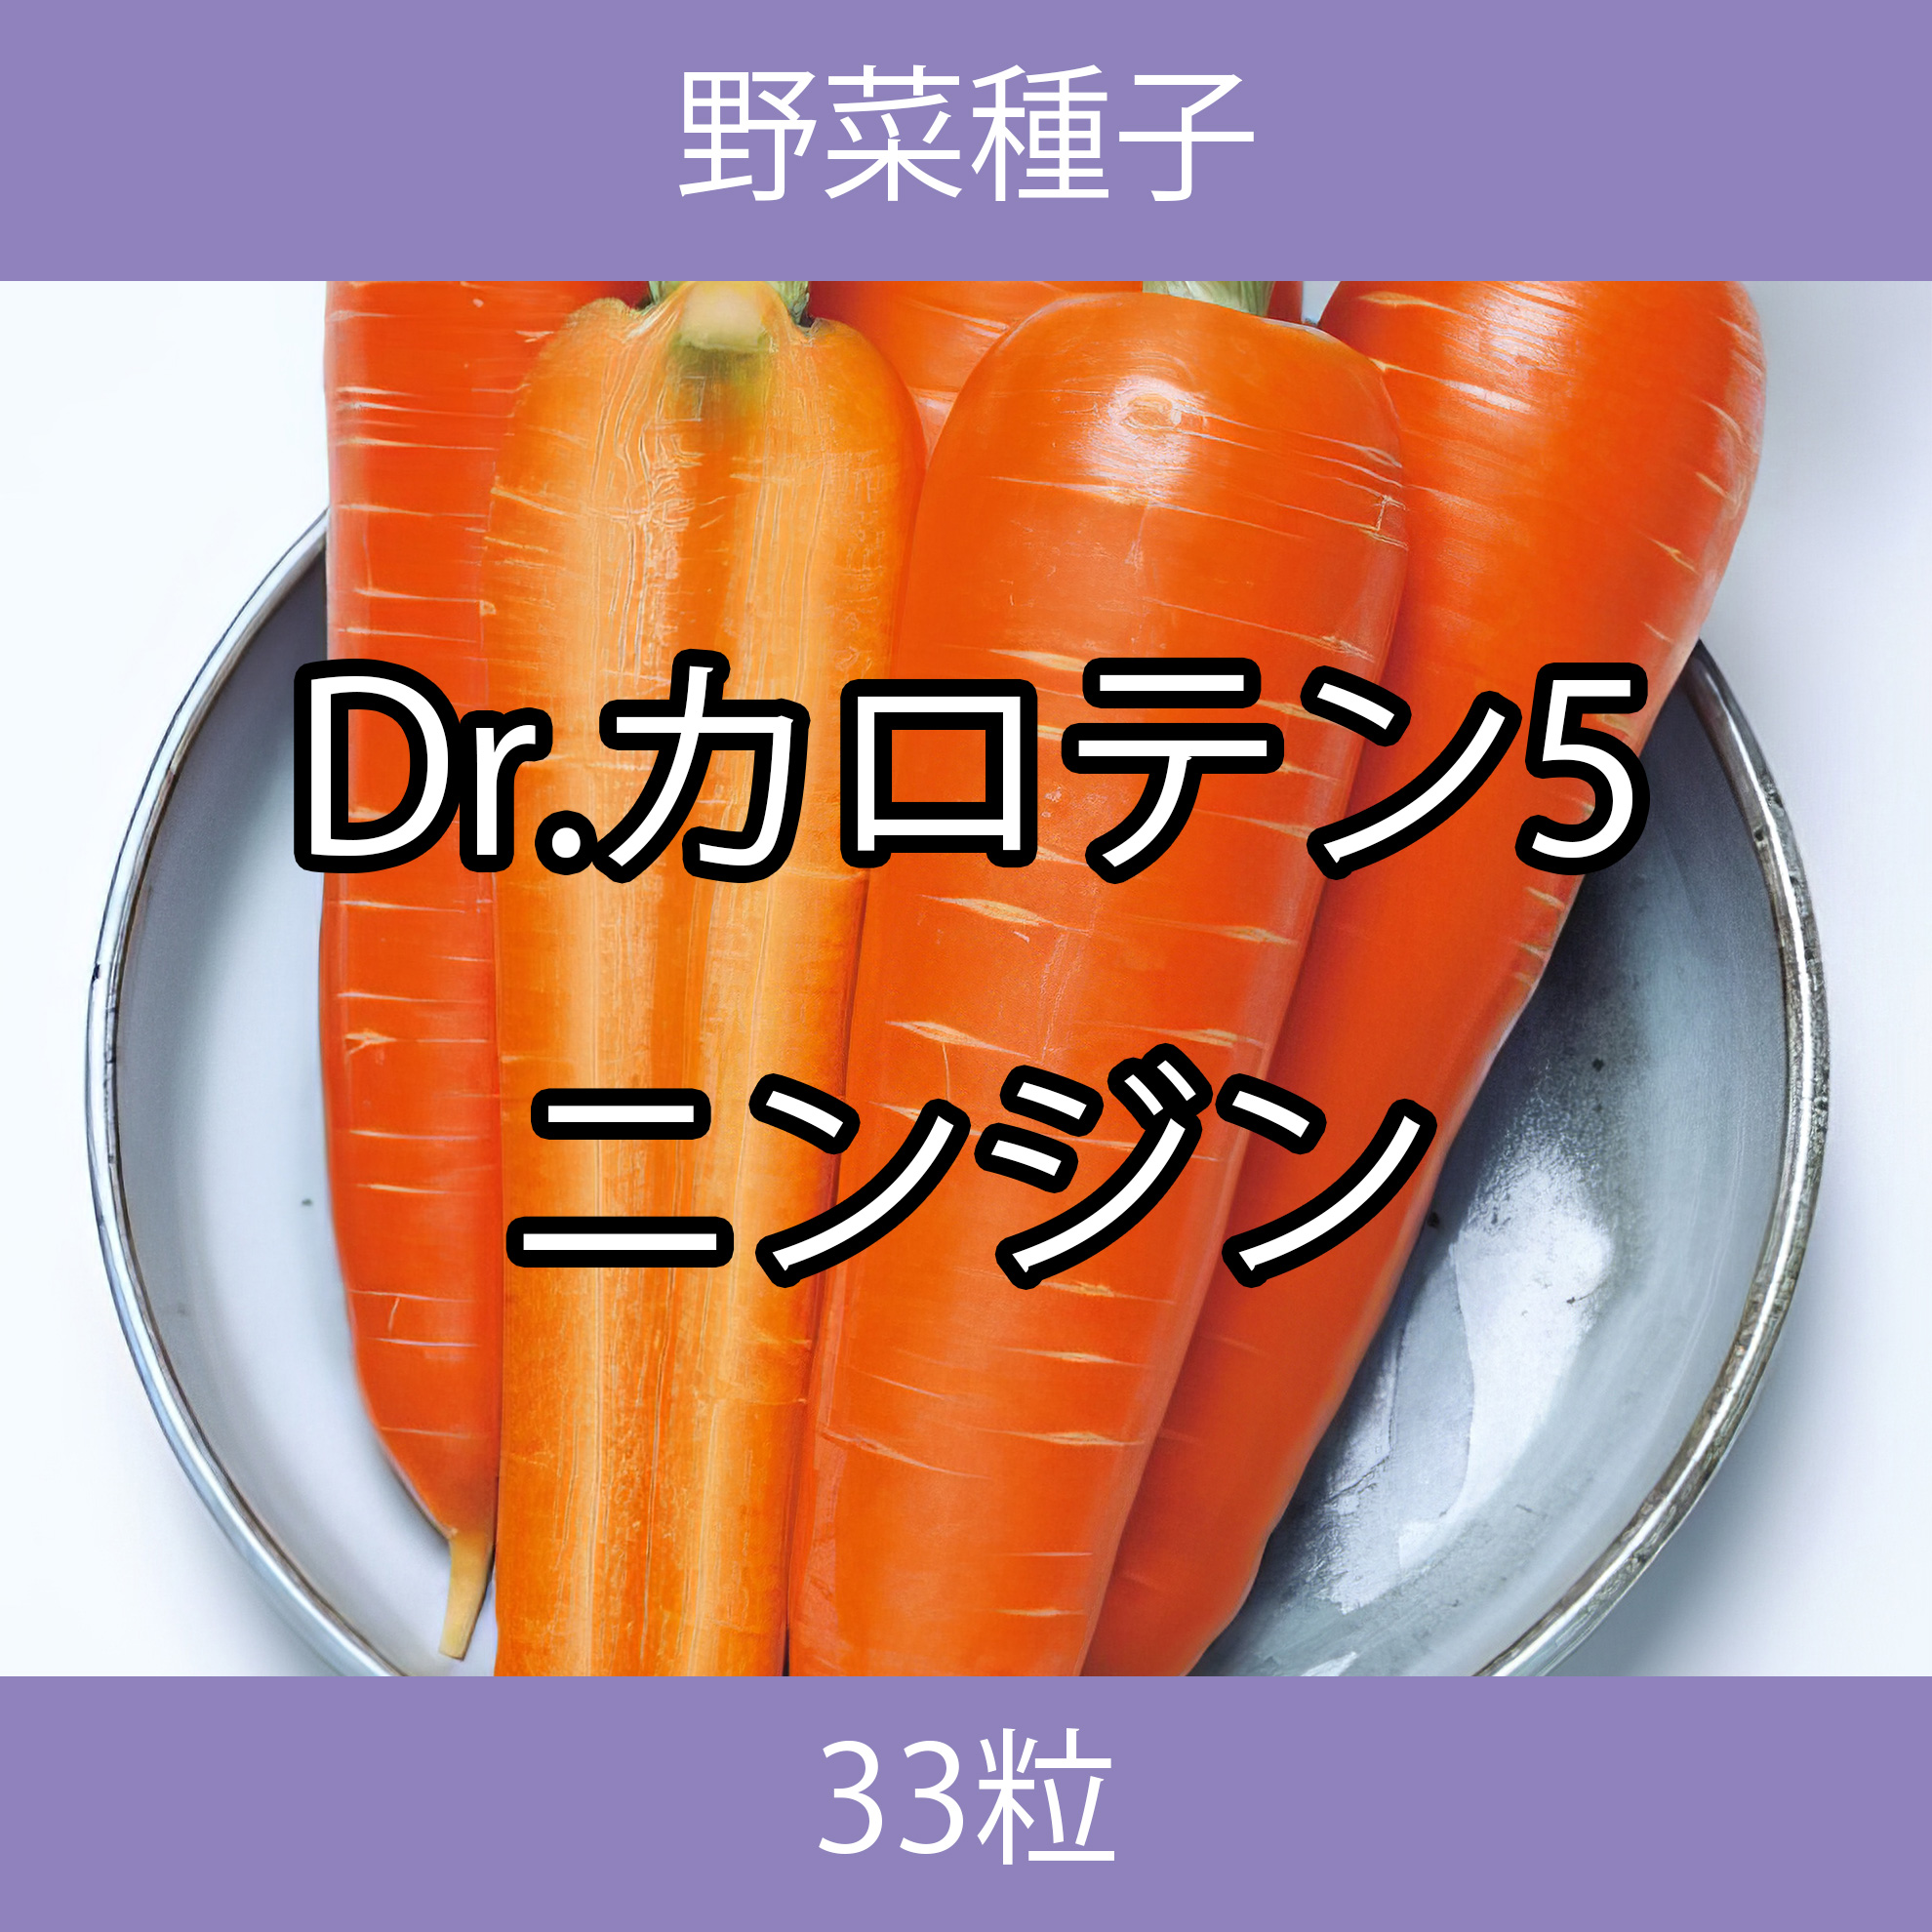 野菜種子 TVF02 Dr.カロテン5ニンジン 33粒